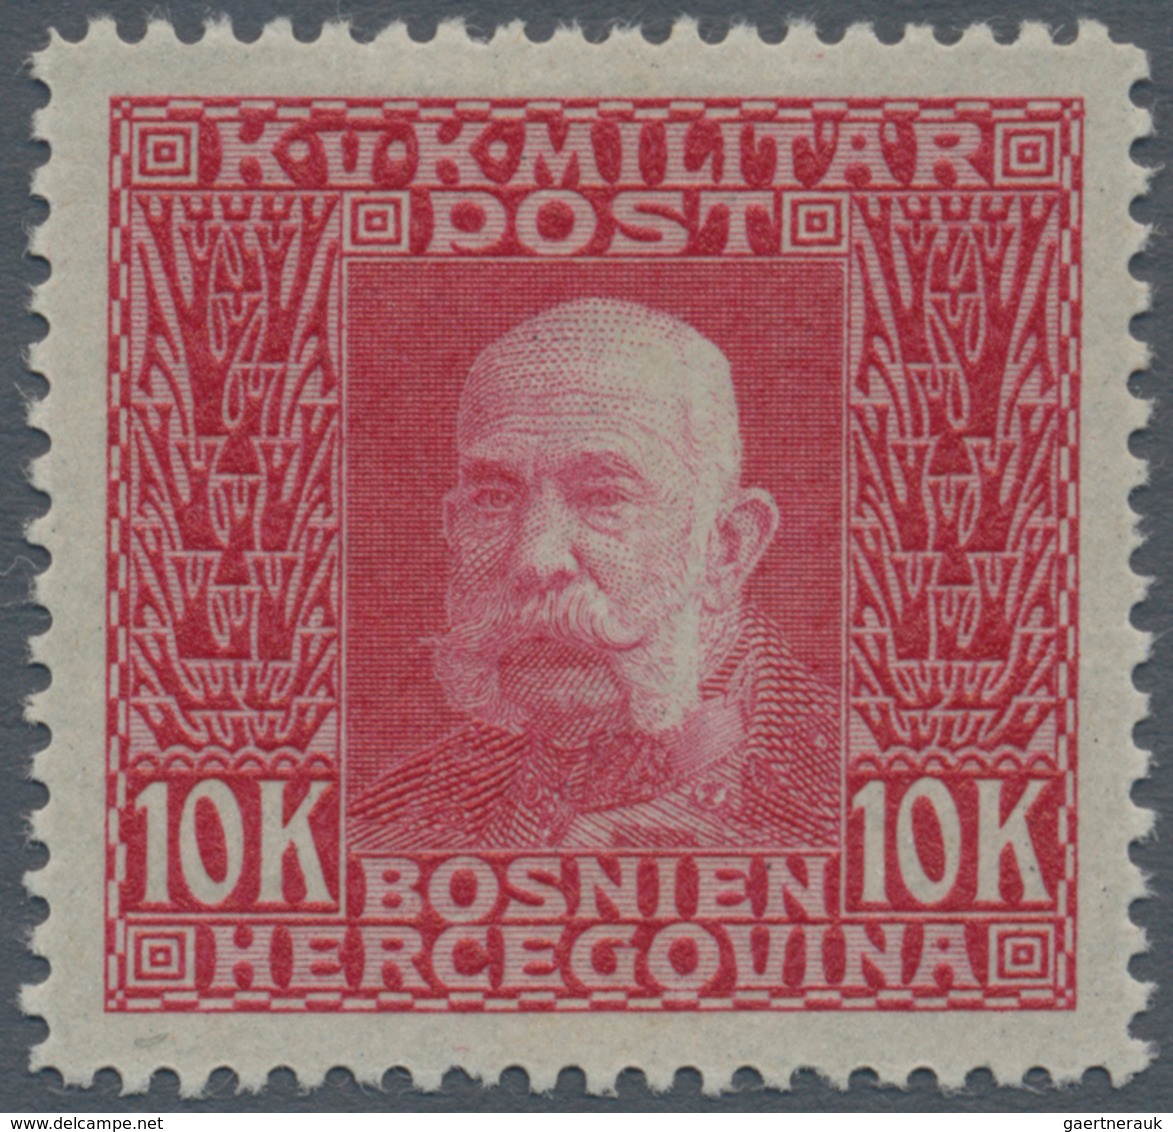 Österreich - Verrechnungsmarken: 1914, Freimarken Kaiser Franz Joseph, 10 Kr. Höchstwert, Fünf Probe - Revenue Stamps